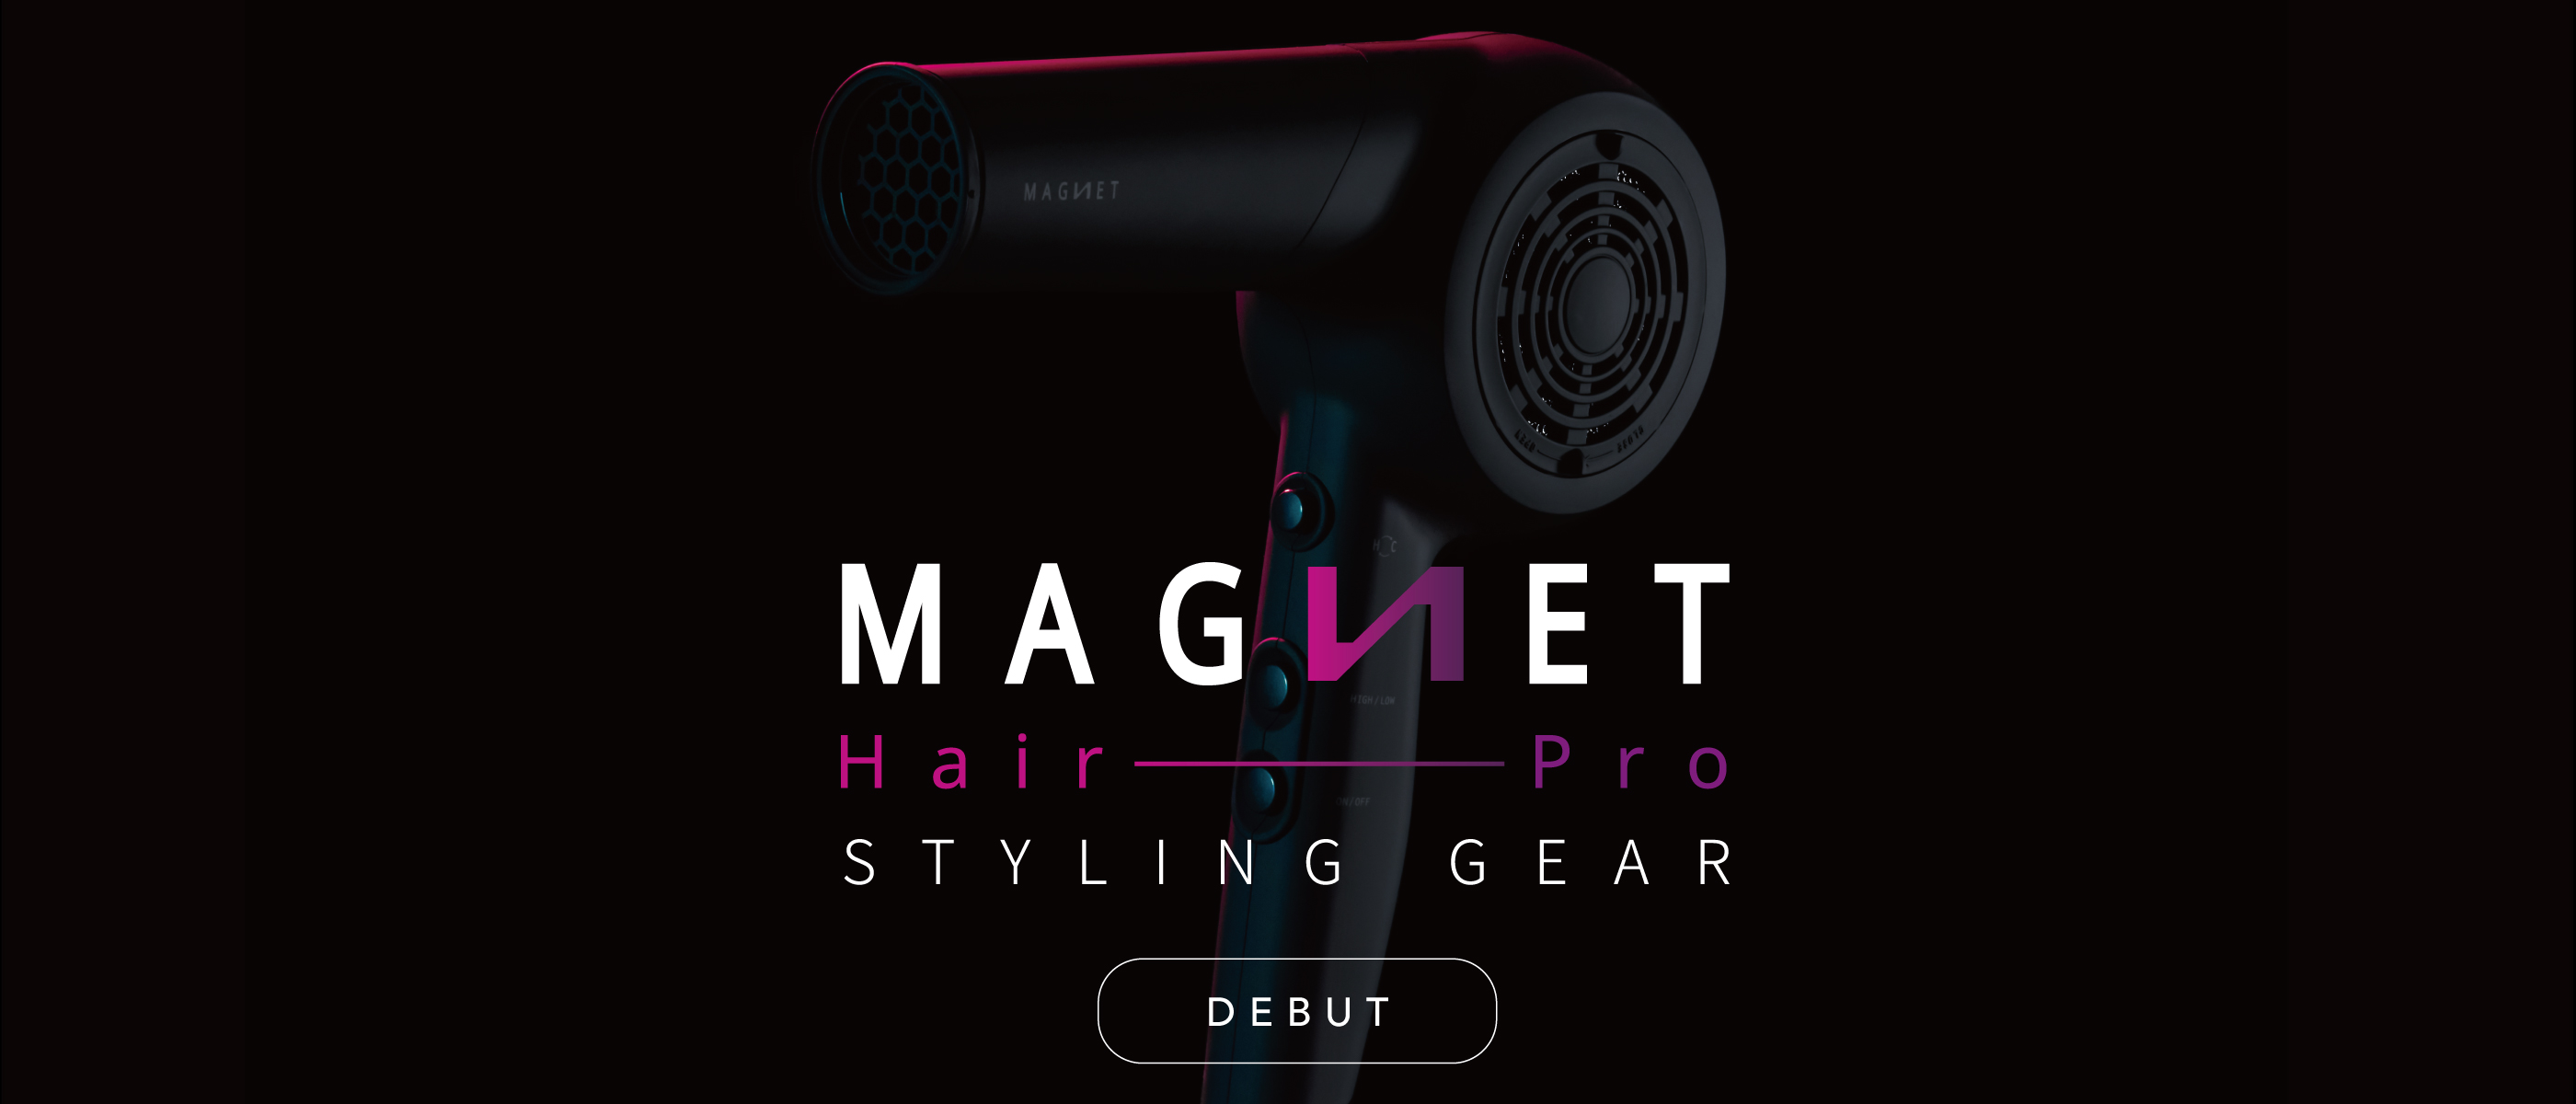 マグネットヘアプロ 公式HP